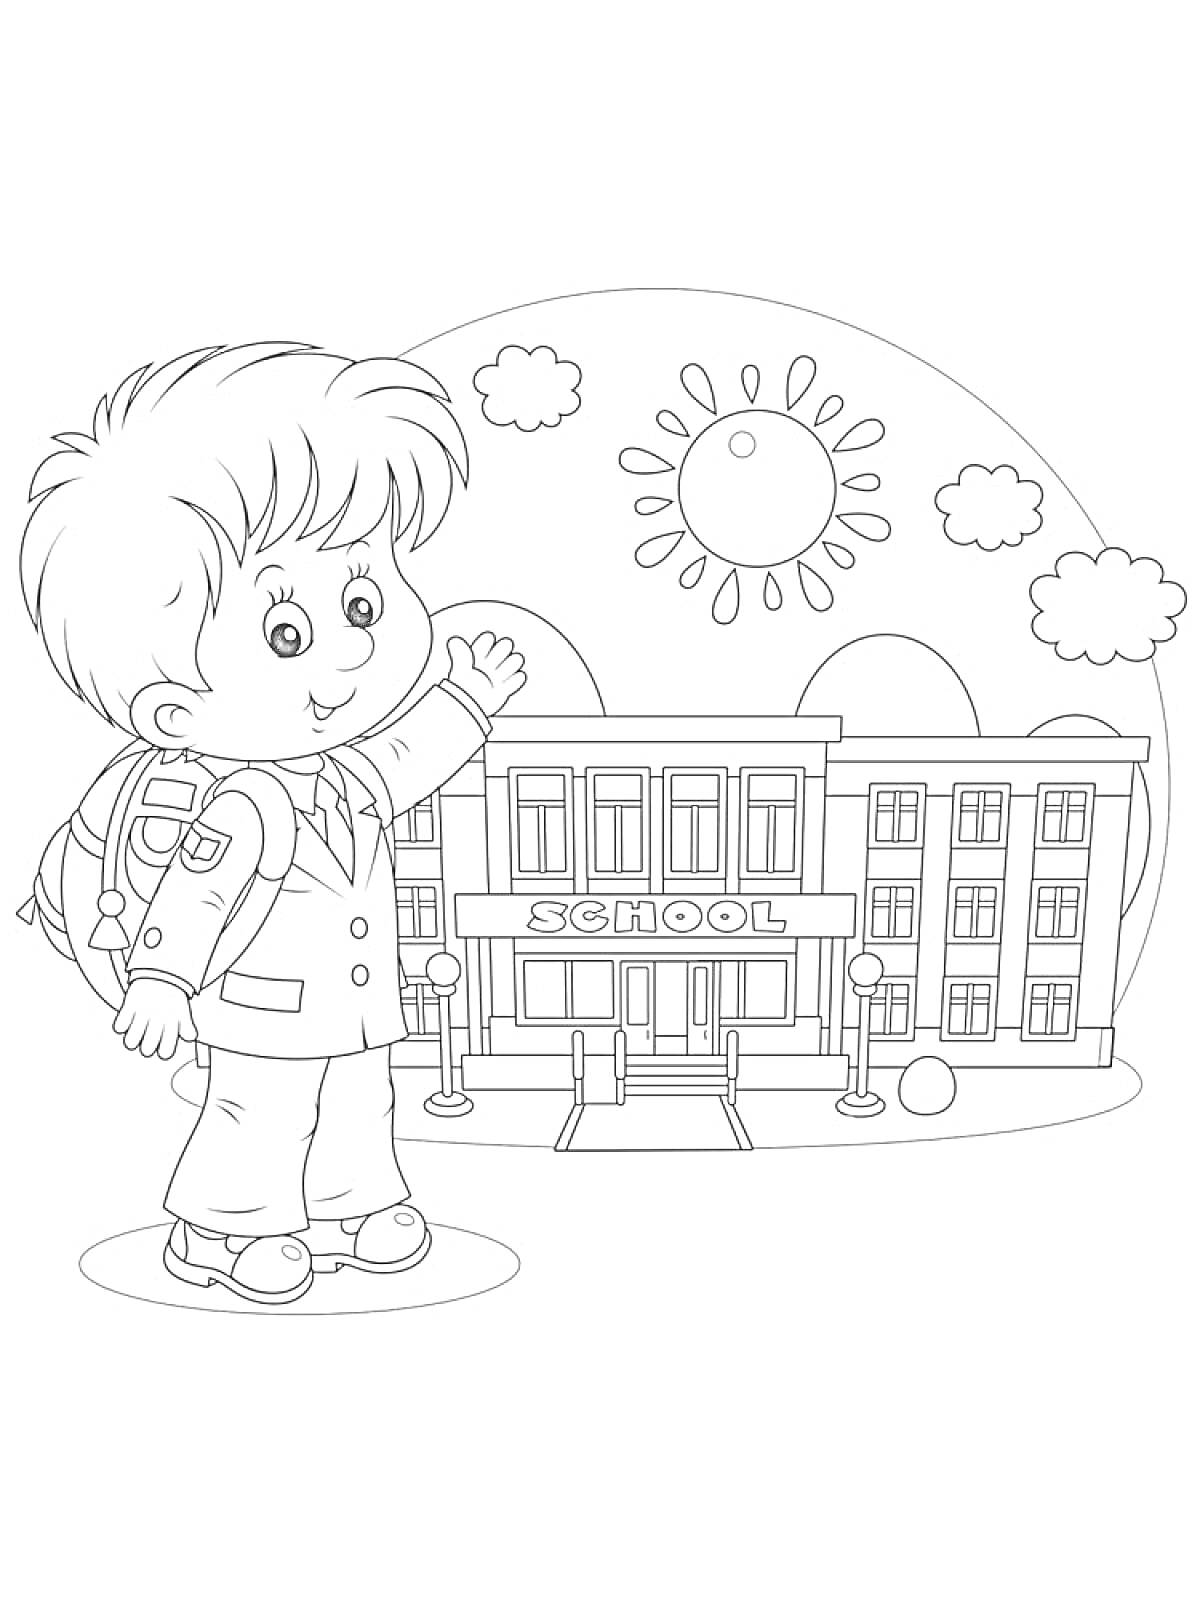 Раскраска Мальчик с рюкзаком около школьного здания, на заднем плане солнце и облака